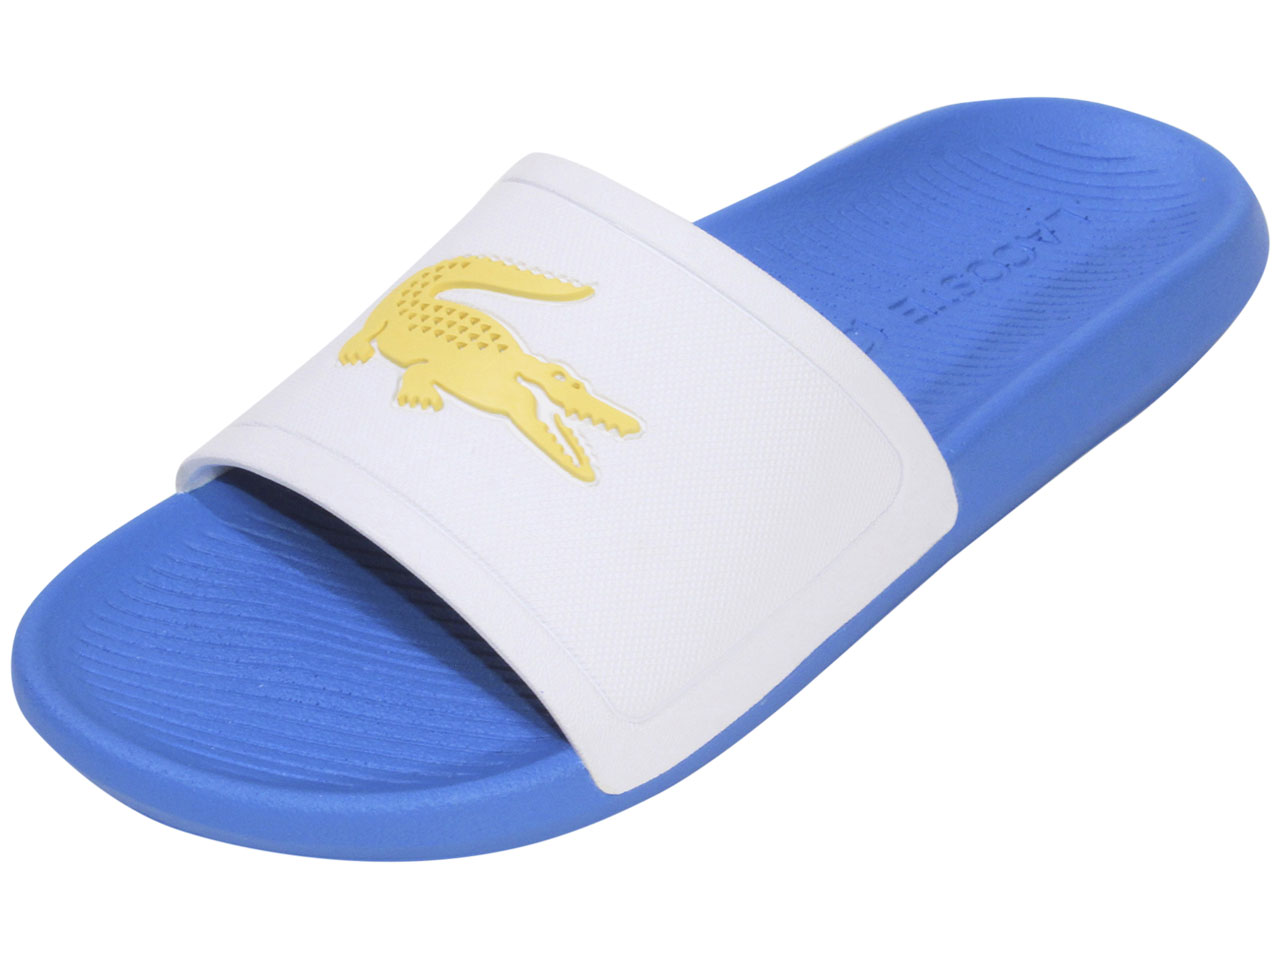 Lacoste Men's Slide Sandals Shoes |